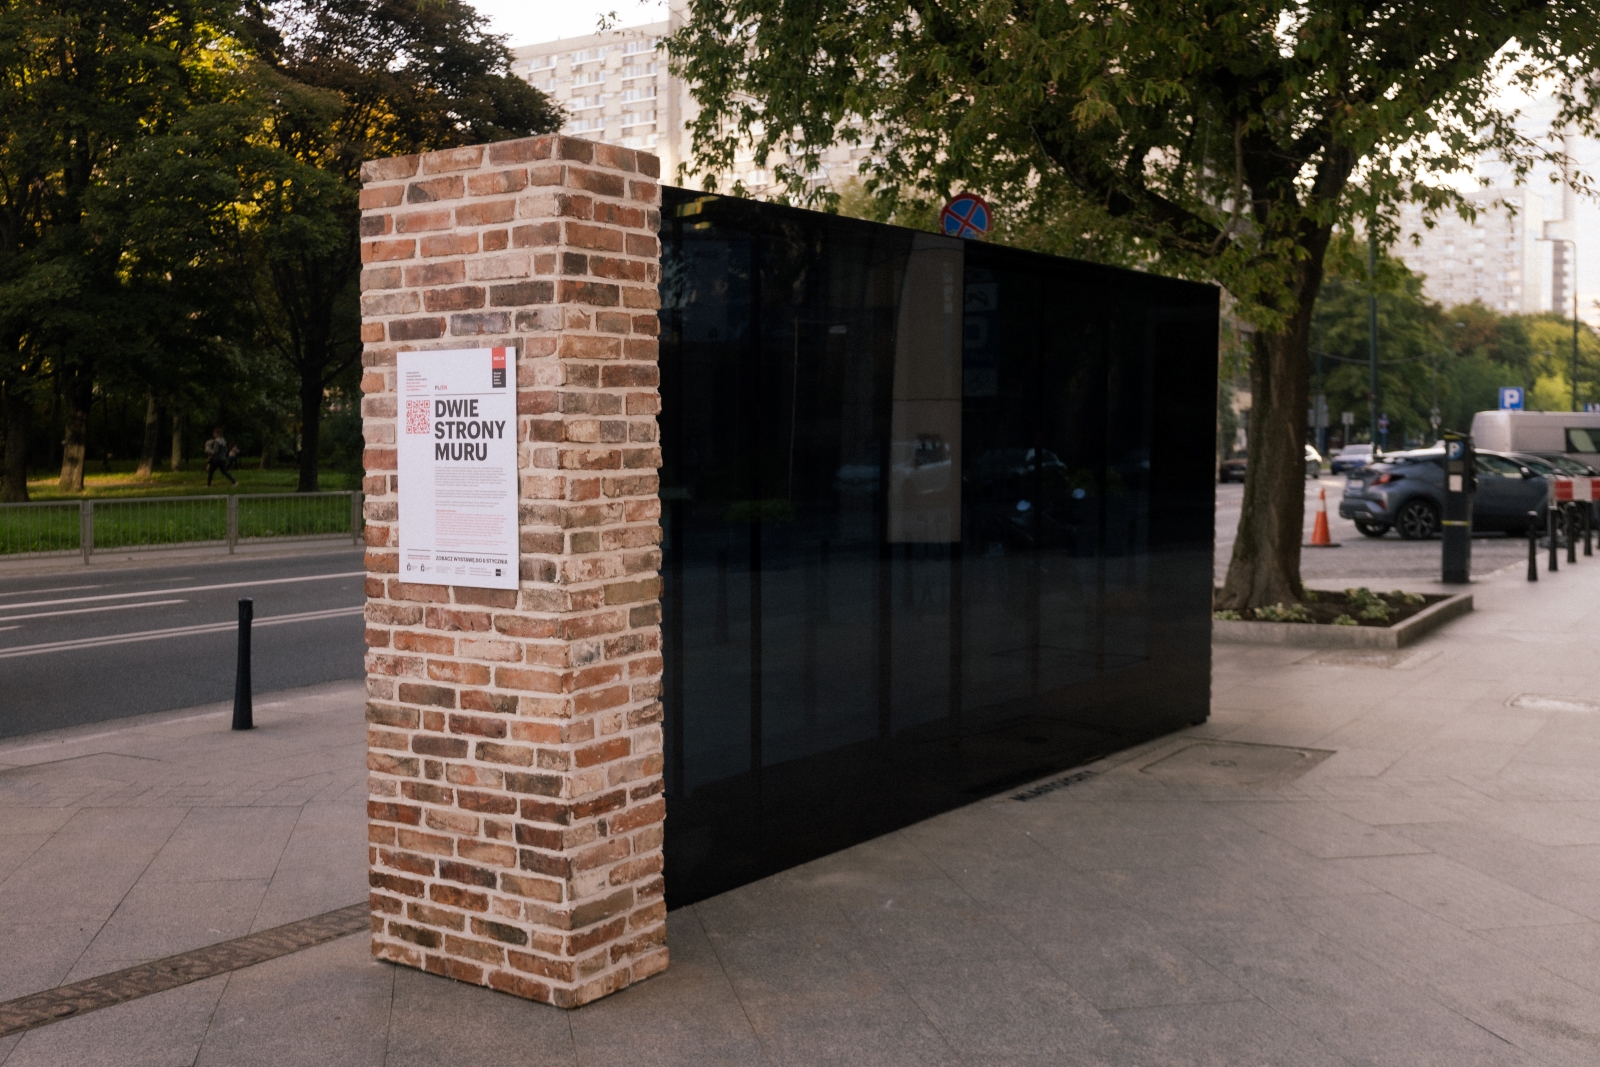 Instalacja dwie strony muru u zbiegu ulic Grzybowskiej i Żelaznej w Warszawie.